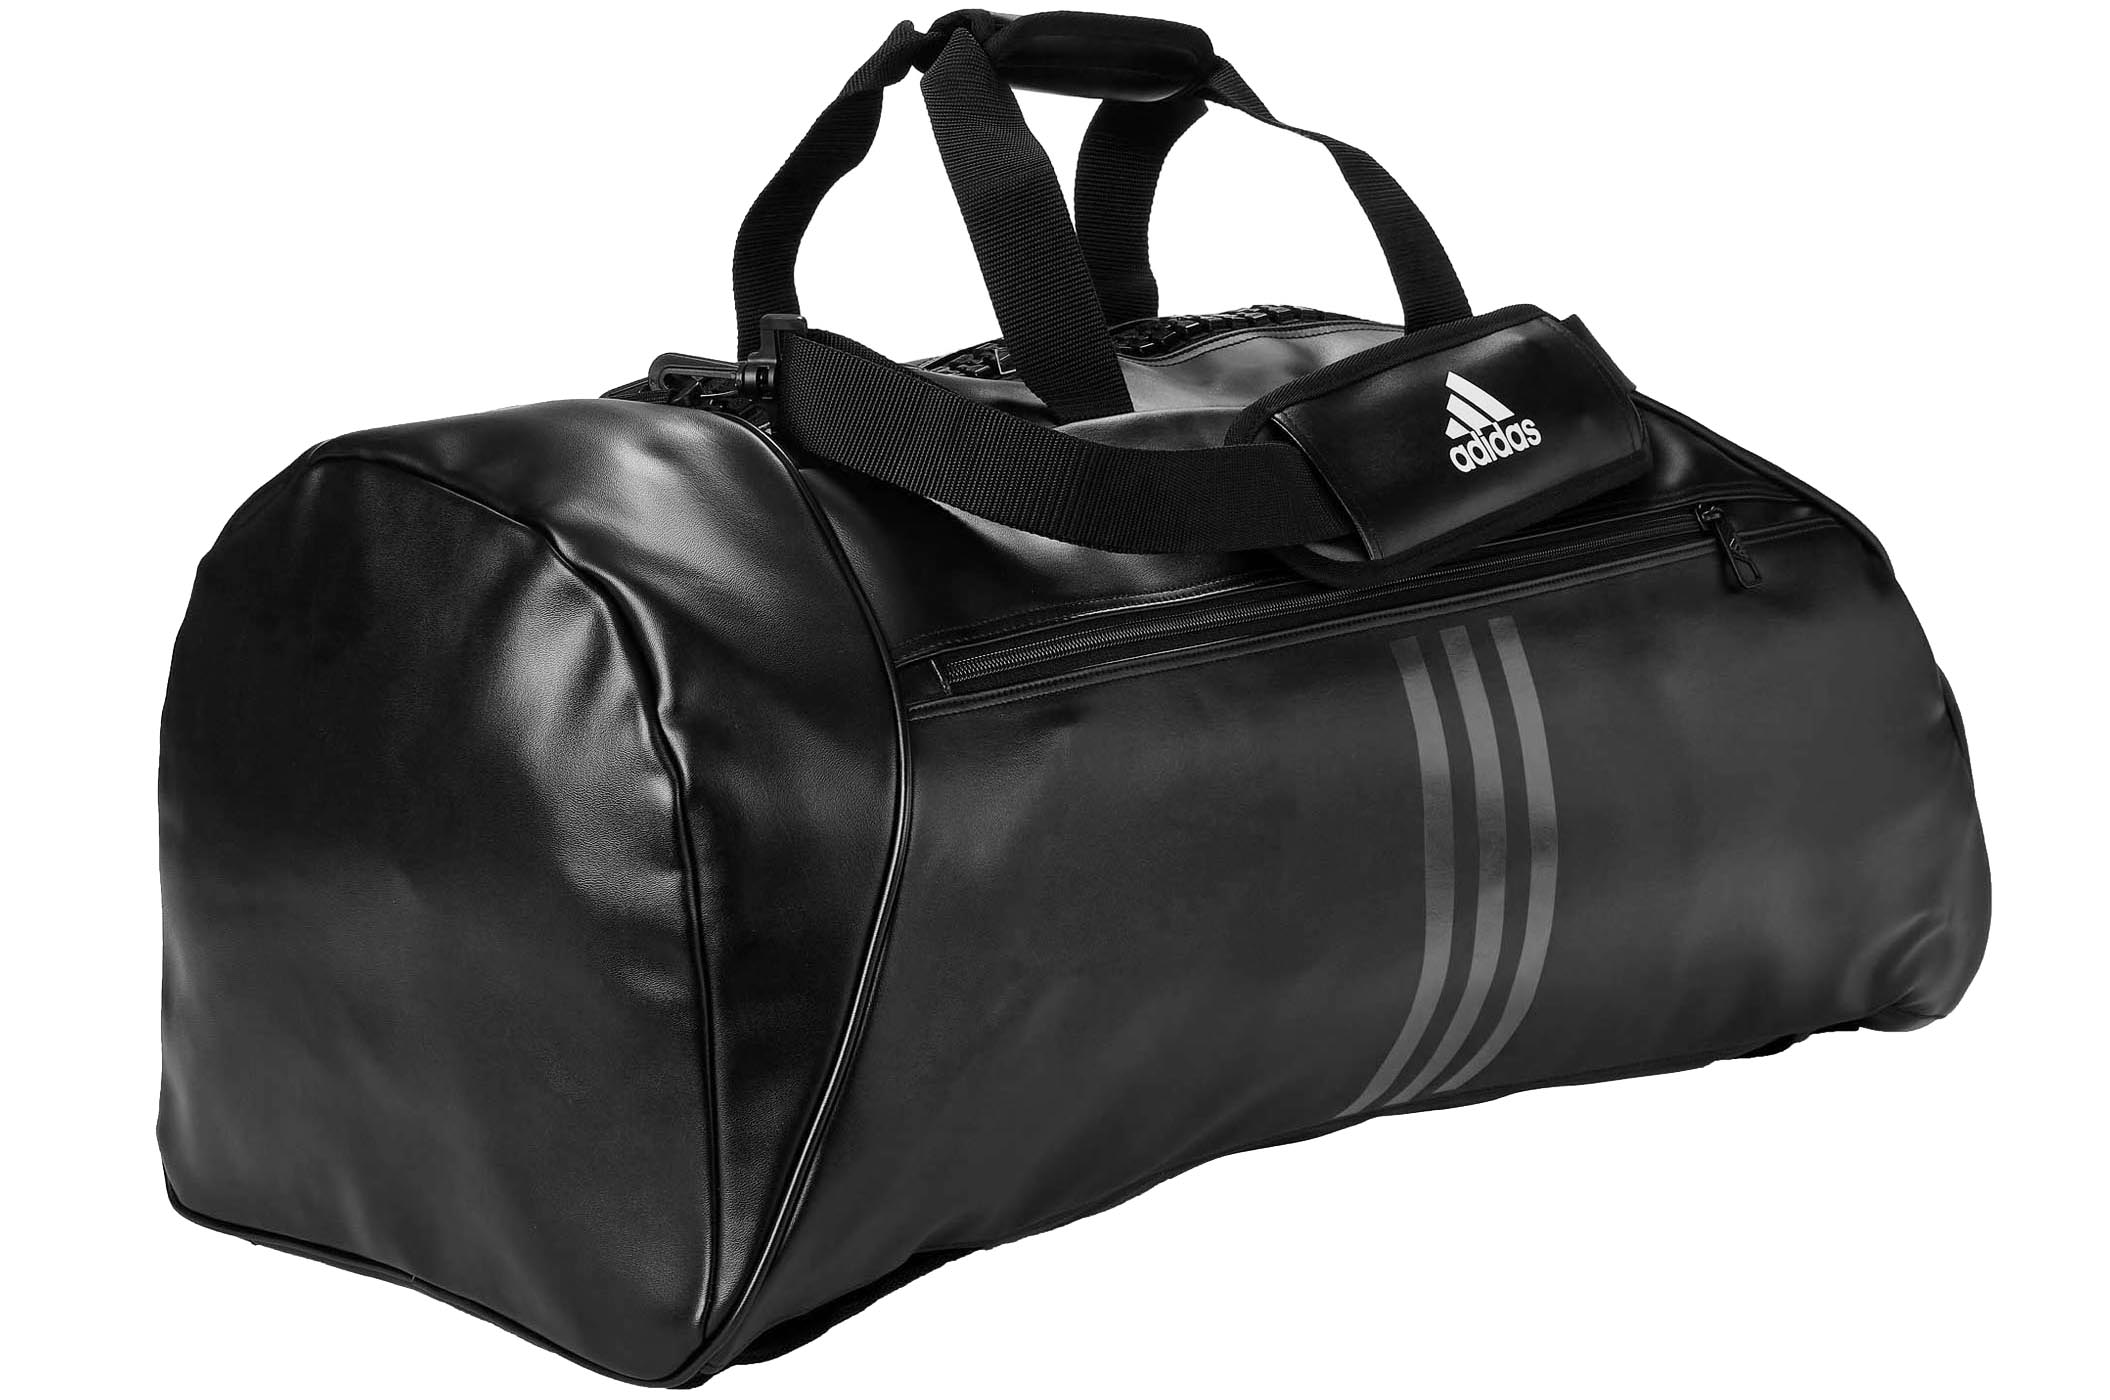 adidas 4Athlts Duffelbag L Sports Bag  Bags  Leisure Bags  Fashion  All